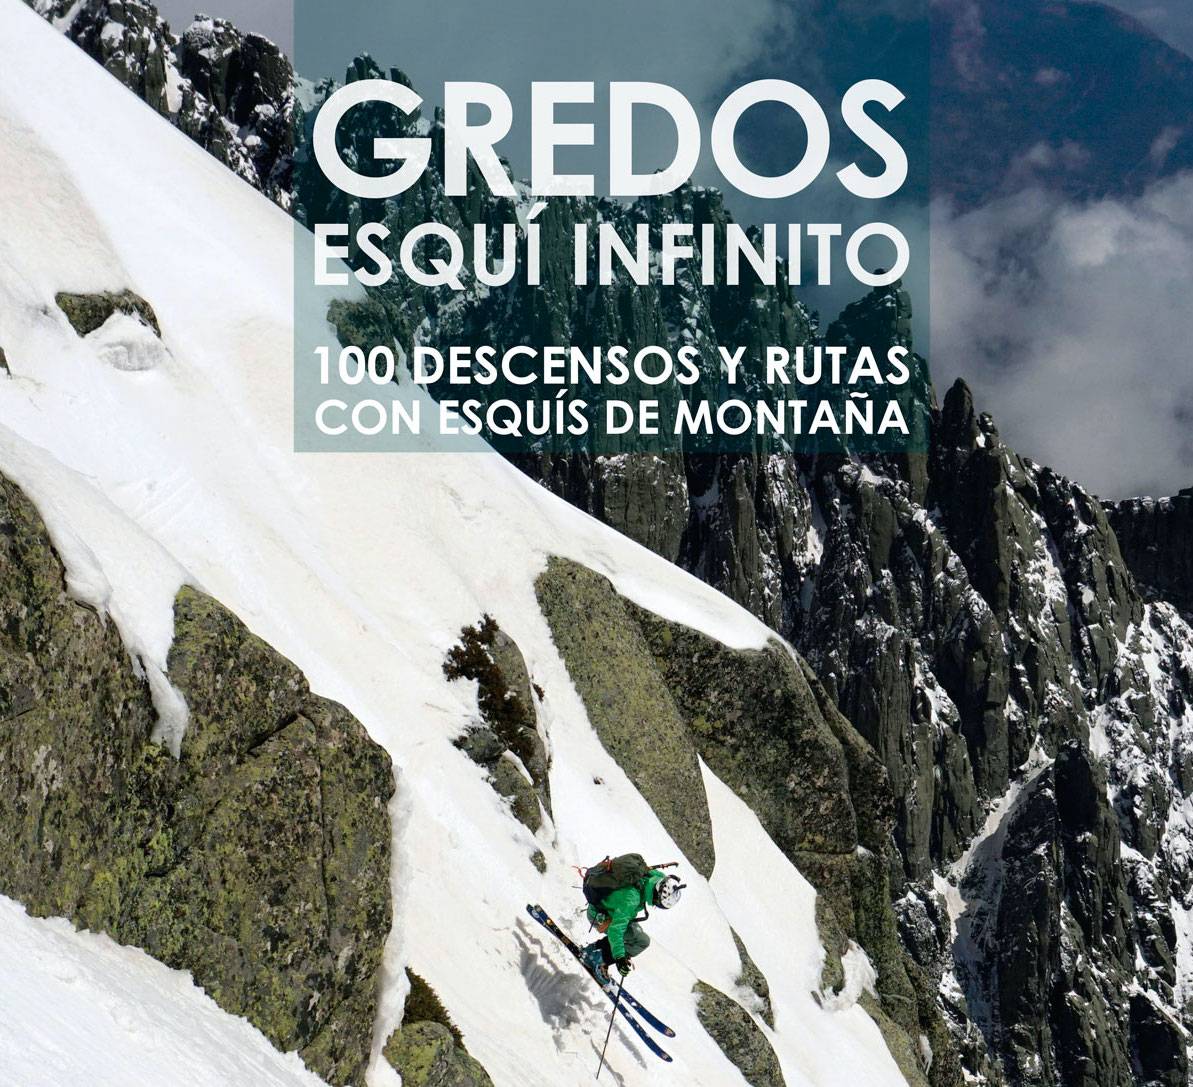 Cien descensos y rutas de skimo en “Gredos, Esquí Infinito”